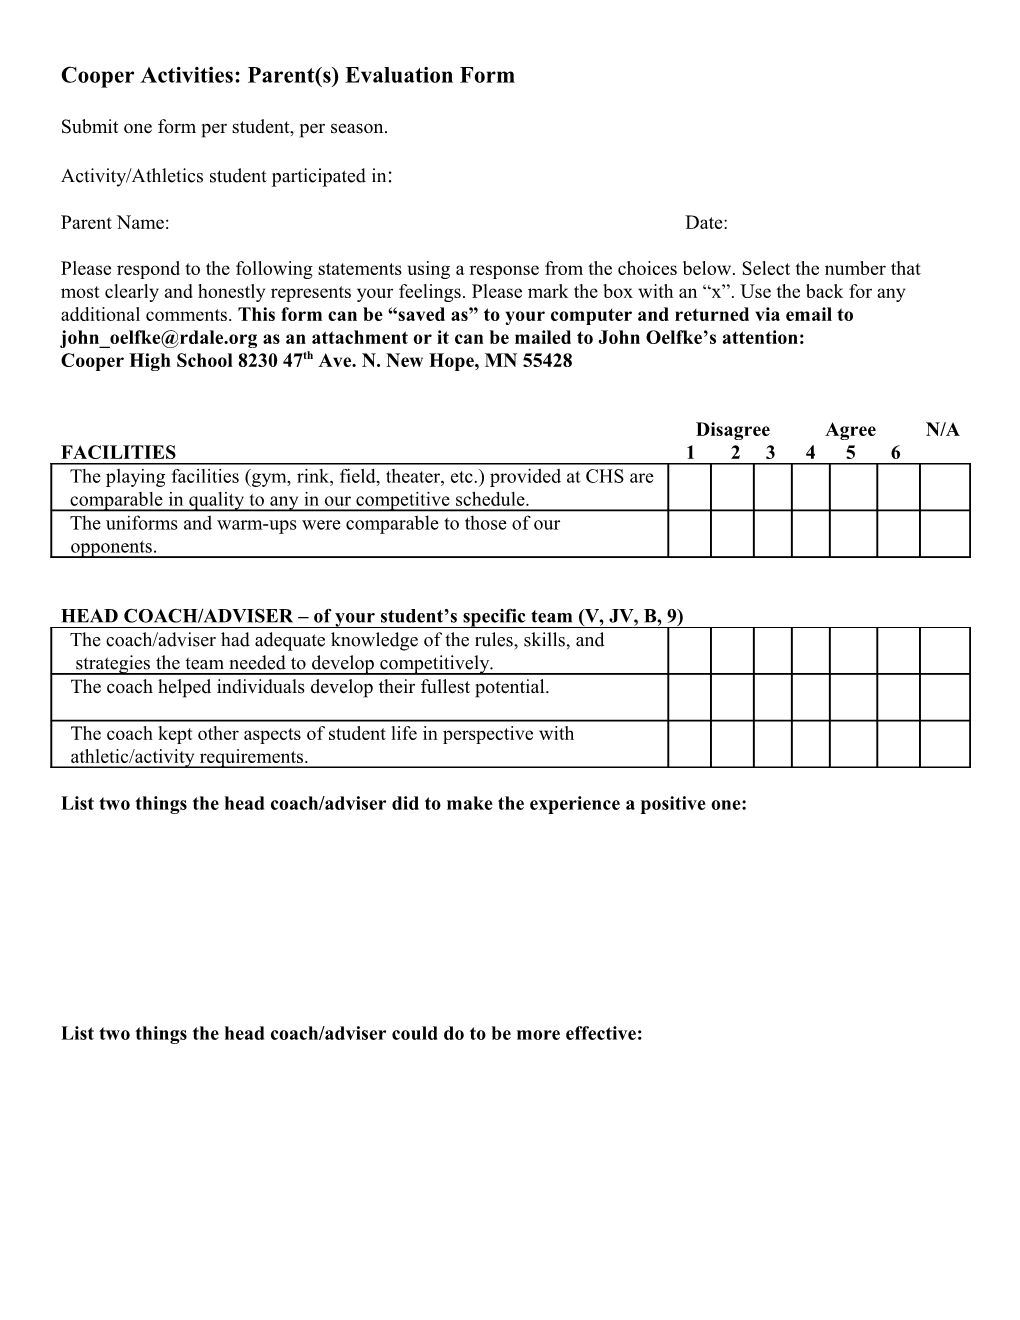 CHS Activities: Parent(S) Evaluation Form